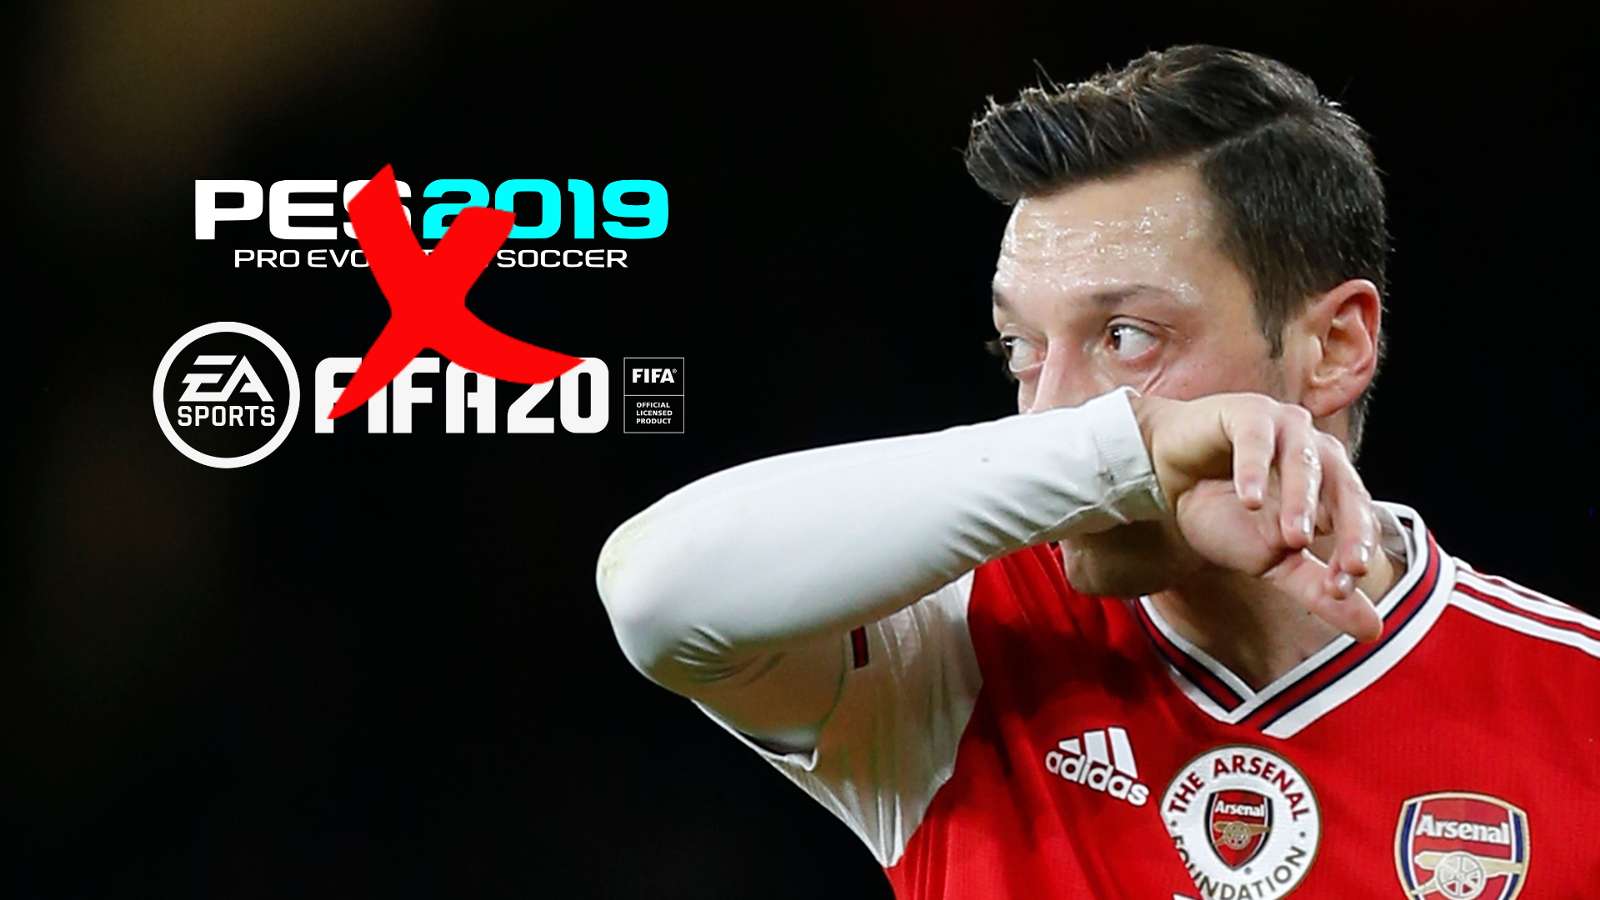 Mesut Özil Dénonce La Situation Des Musulmans En Chinoise : Il Est Supprimé De Fifa Et De Pes En Chine